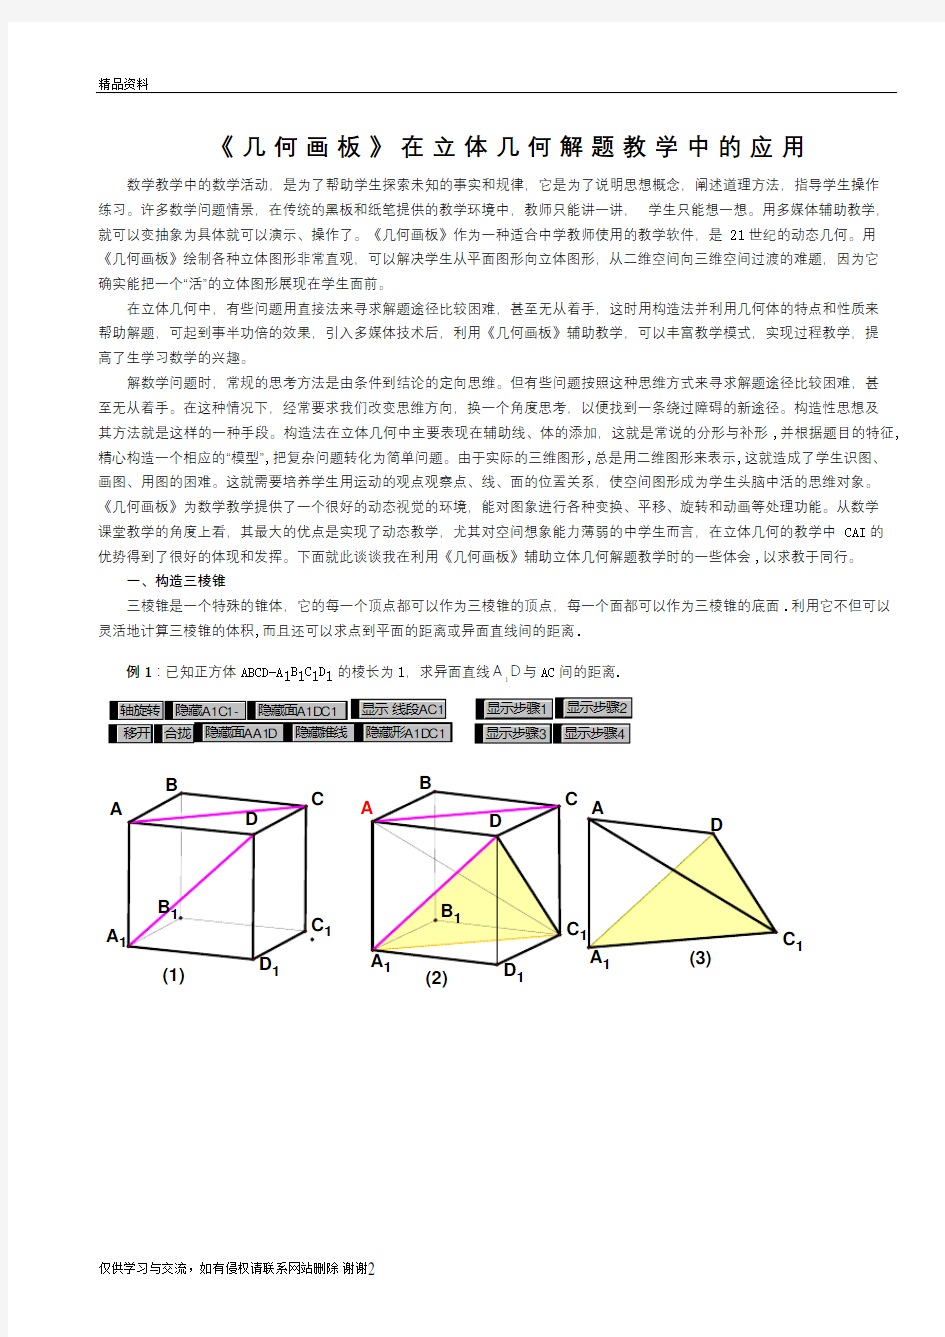 几何画板在立体几何教学的应用复习过程